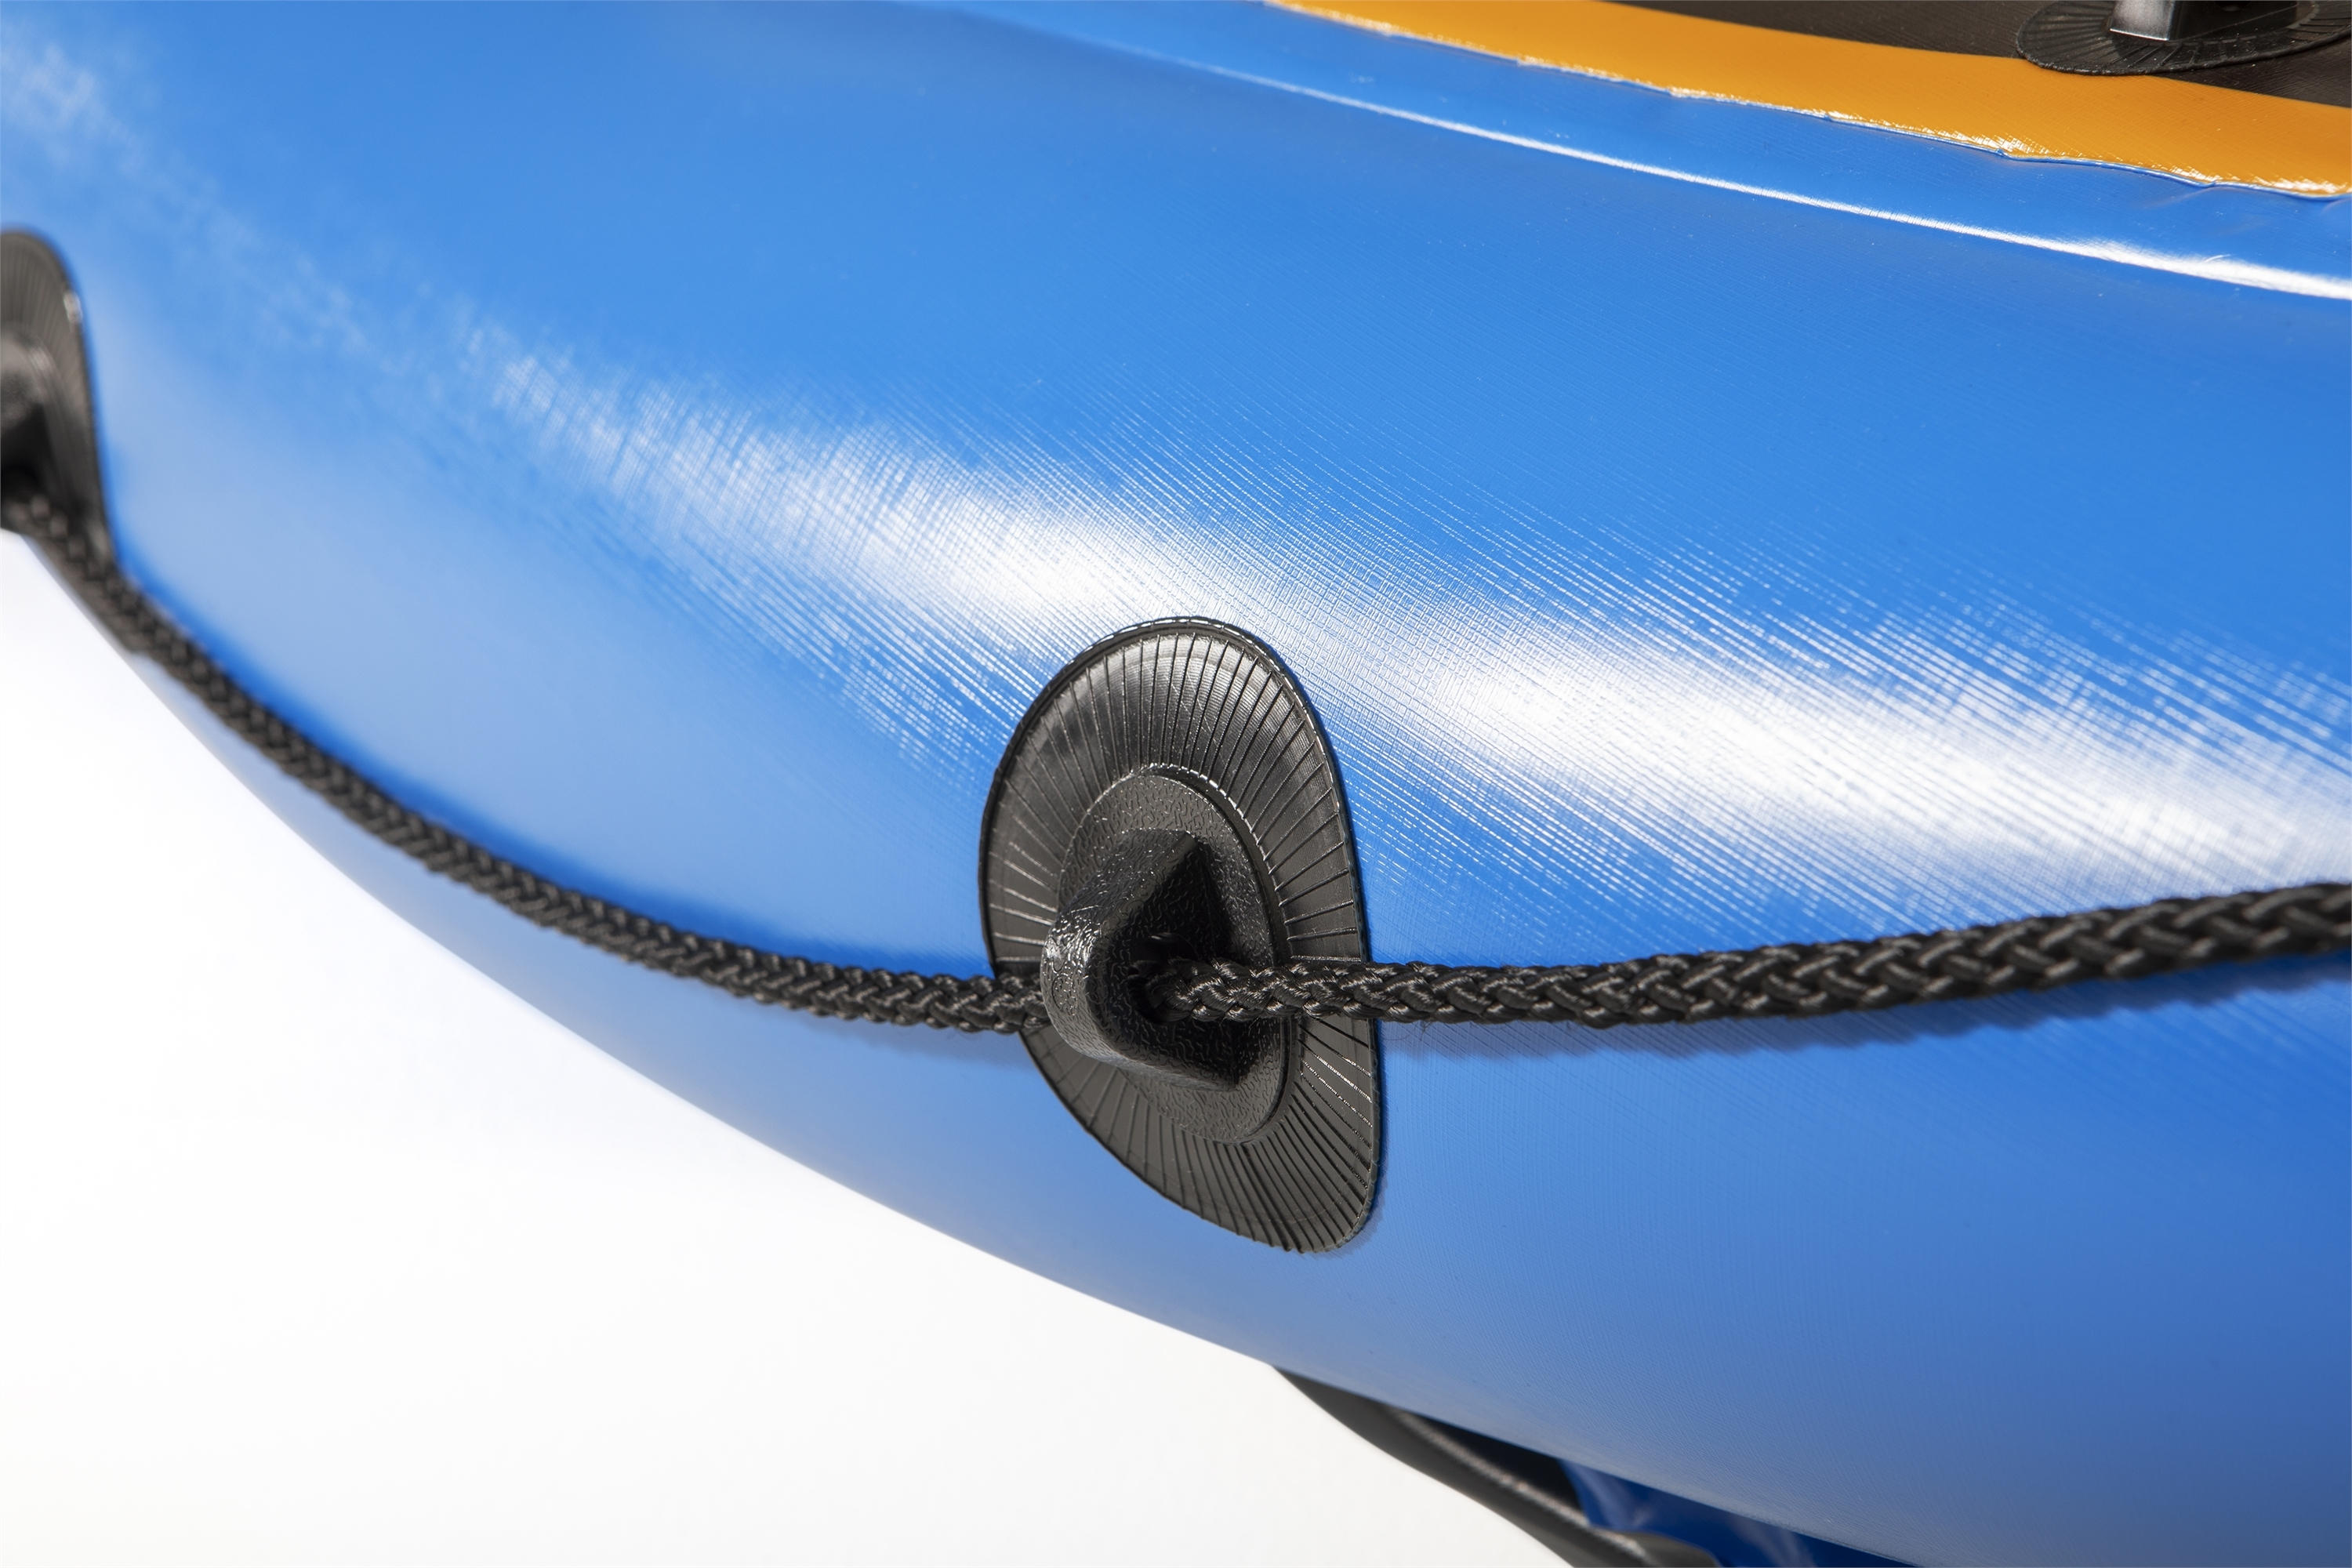 KAJAK 65115 - Blau/Orange, Trend, Kunststoff (275/81/45cm) - Bestway